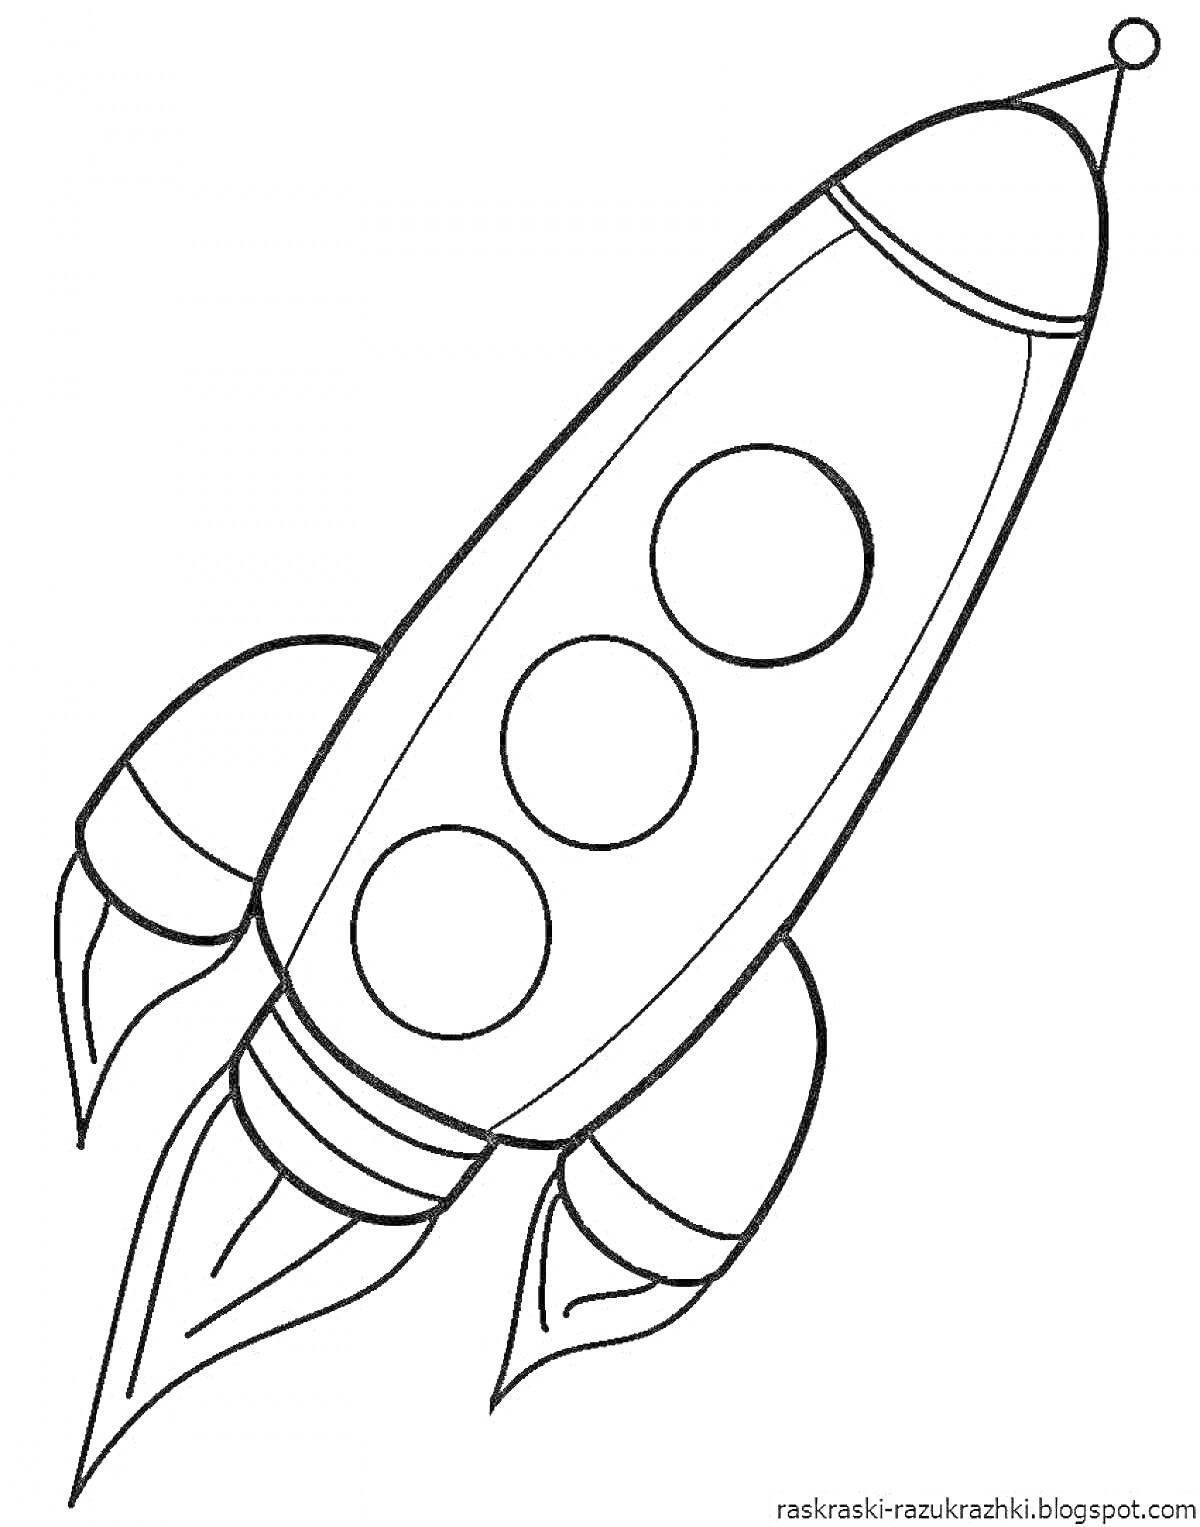 Раскраска Ракета с тремя круглыми иллюминаторами, двумя нижними крыльями и двумя соплами, выпускающими огонь